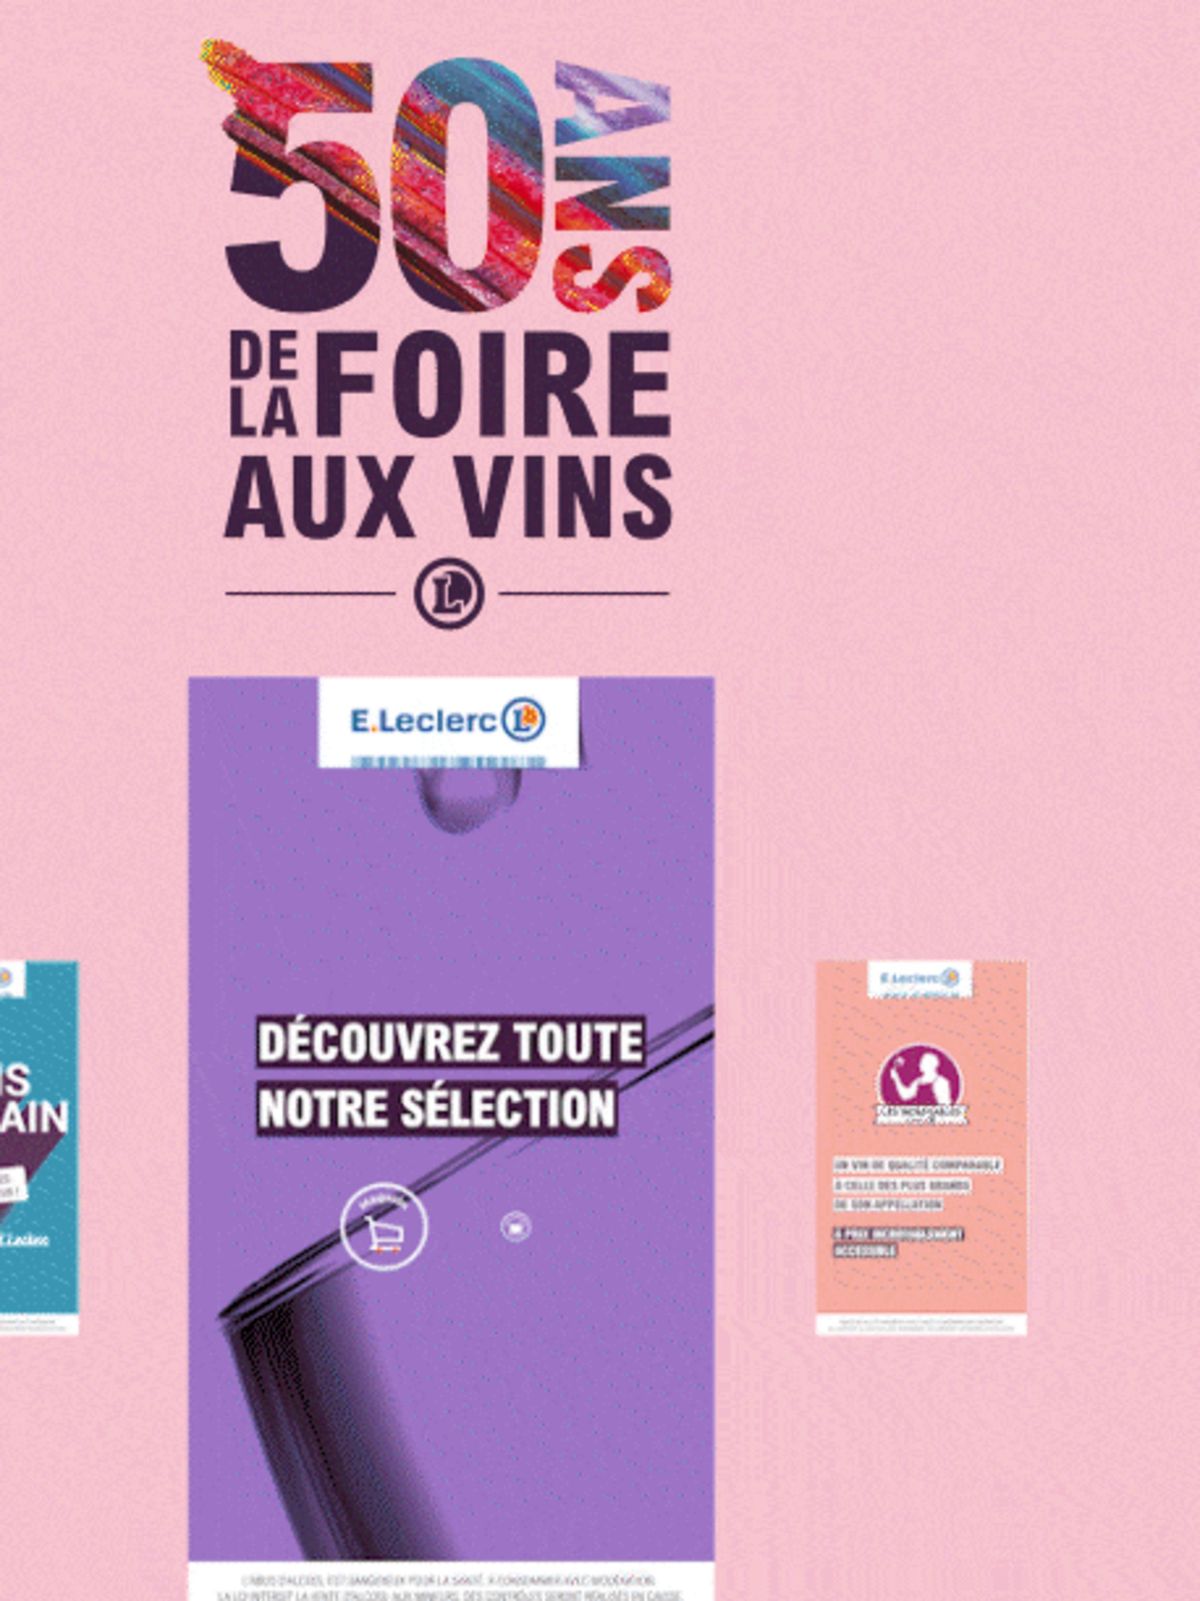 Catalogue Foire Aux Vins - Mixte, page 00388